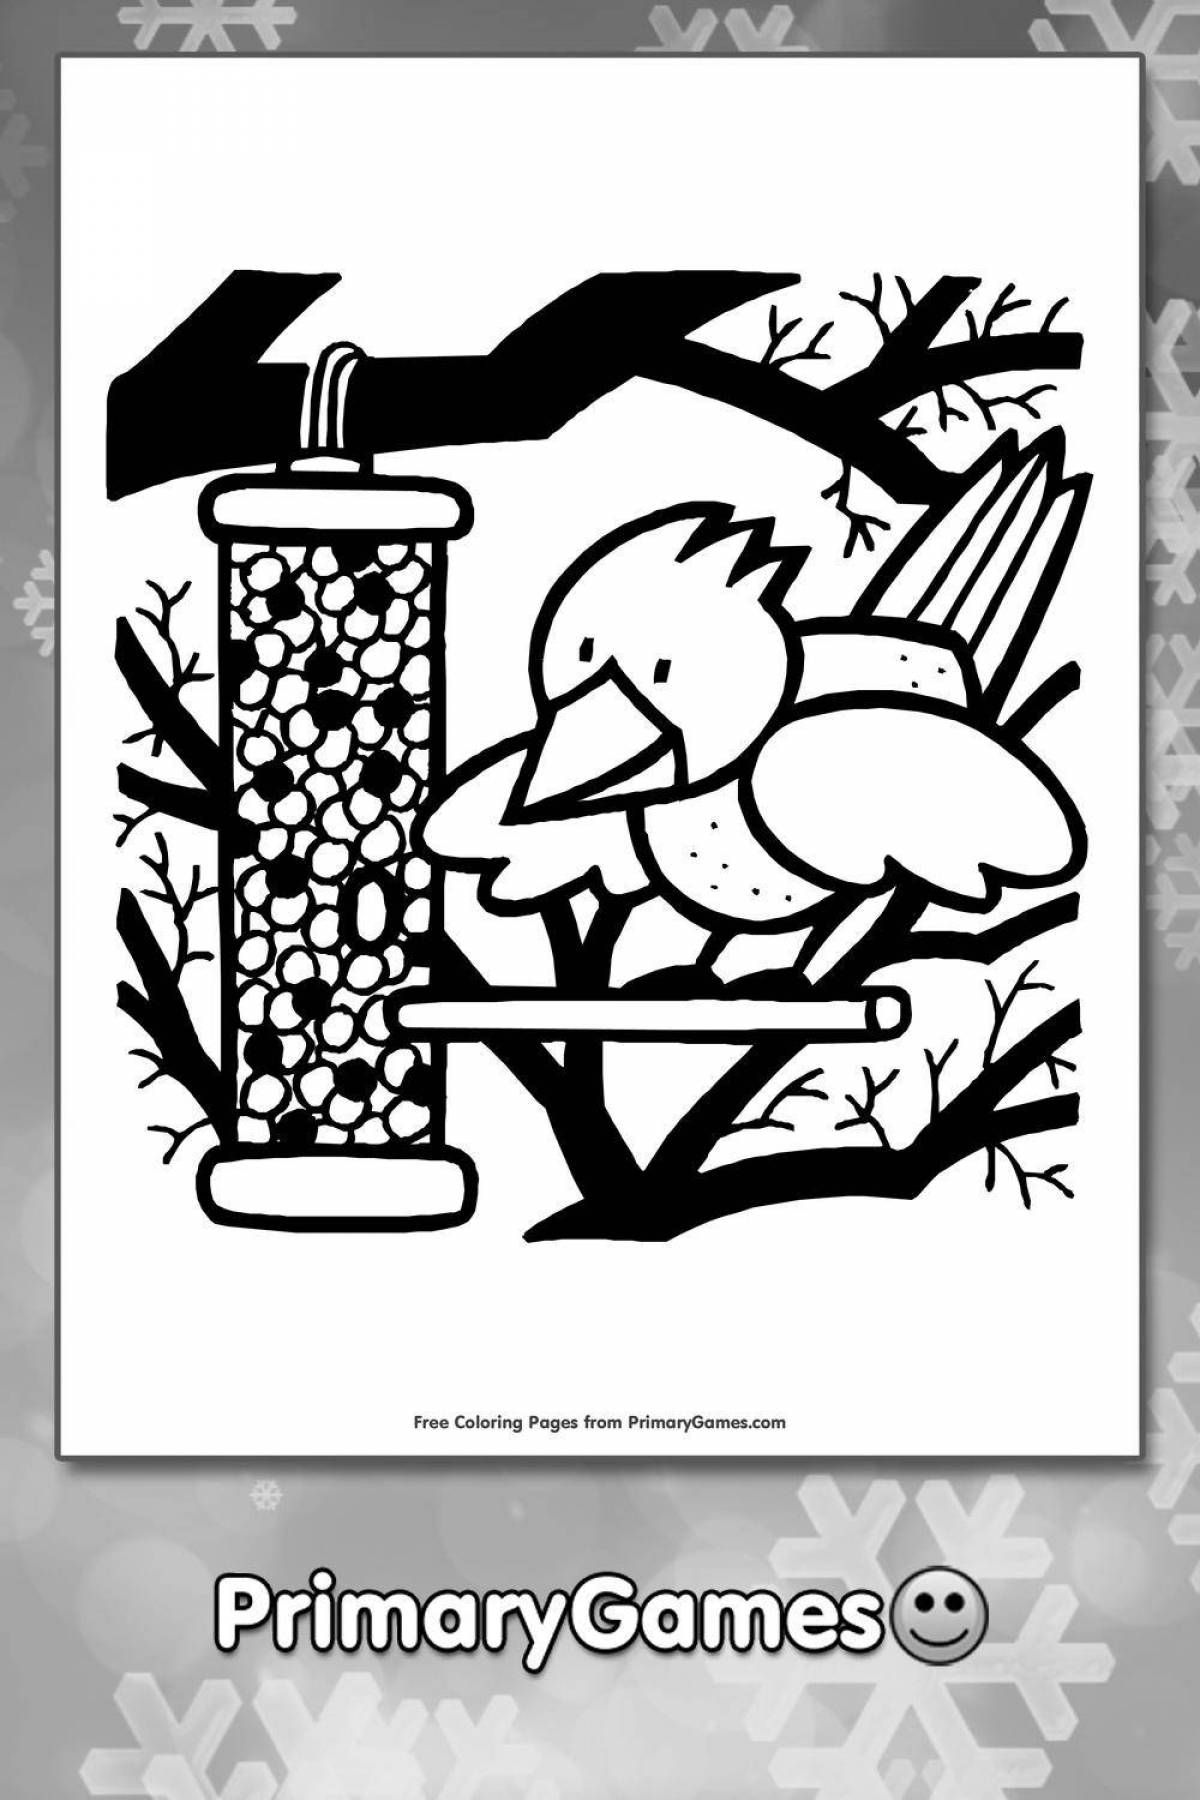 Inspiring bird feeder coloring book for preschoolers